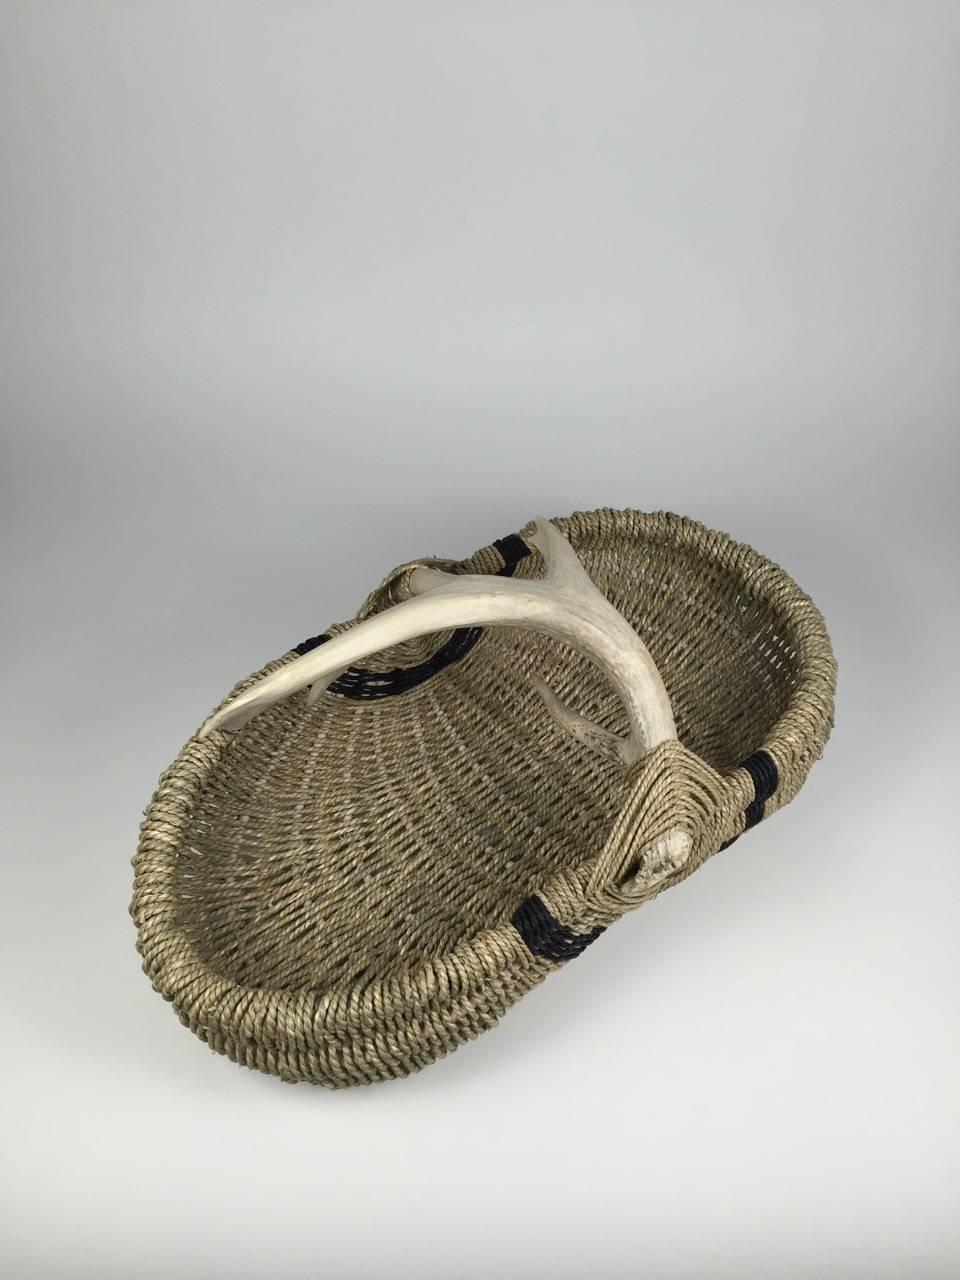 Contemporary Custom Deer Antler Basket by Dax Savage